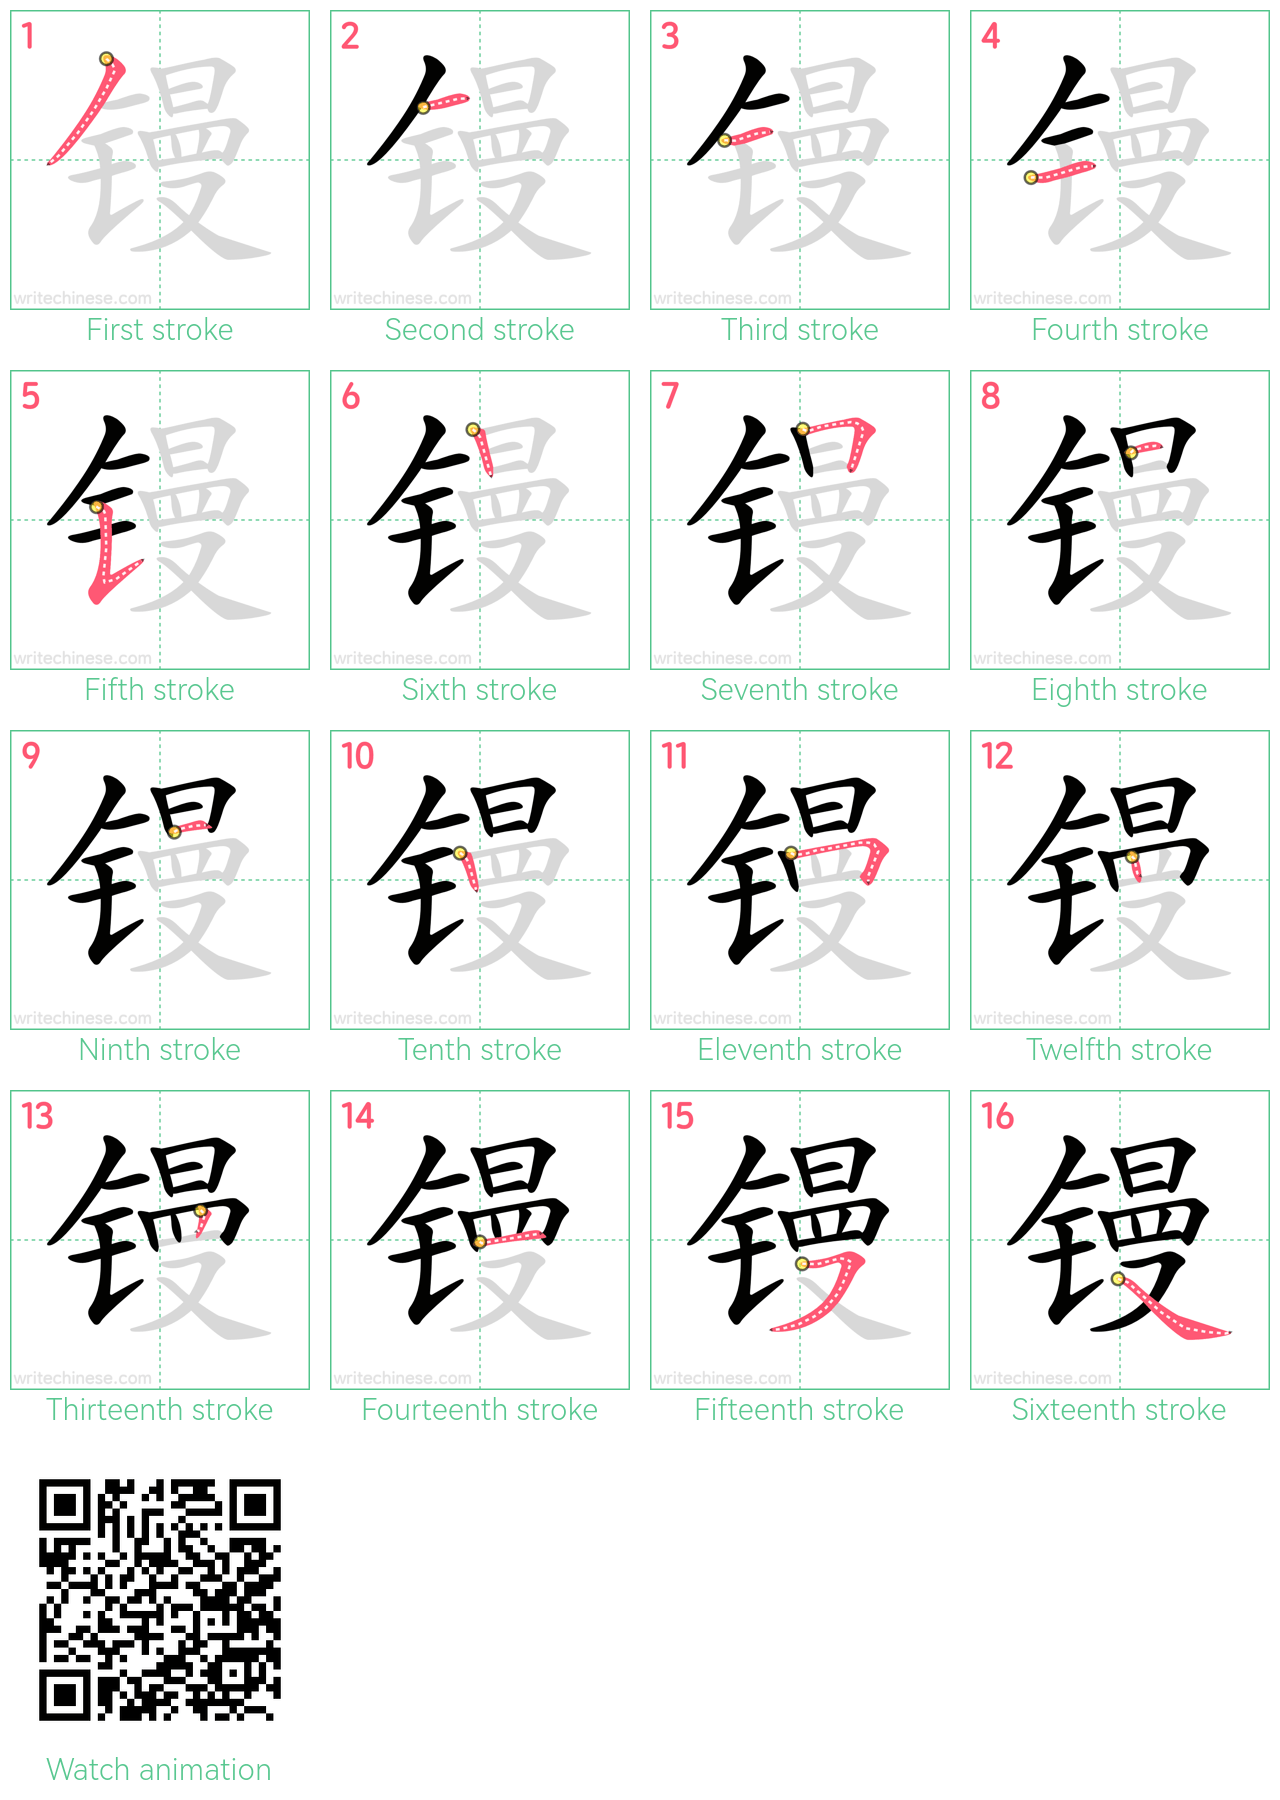 镘 step-by-step stroke order diagrams